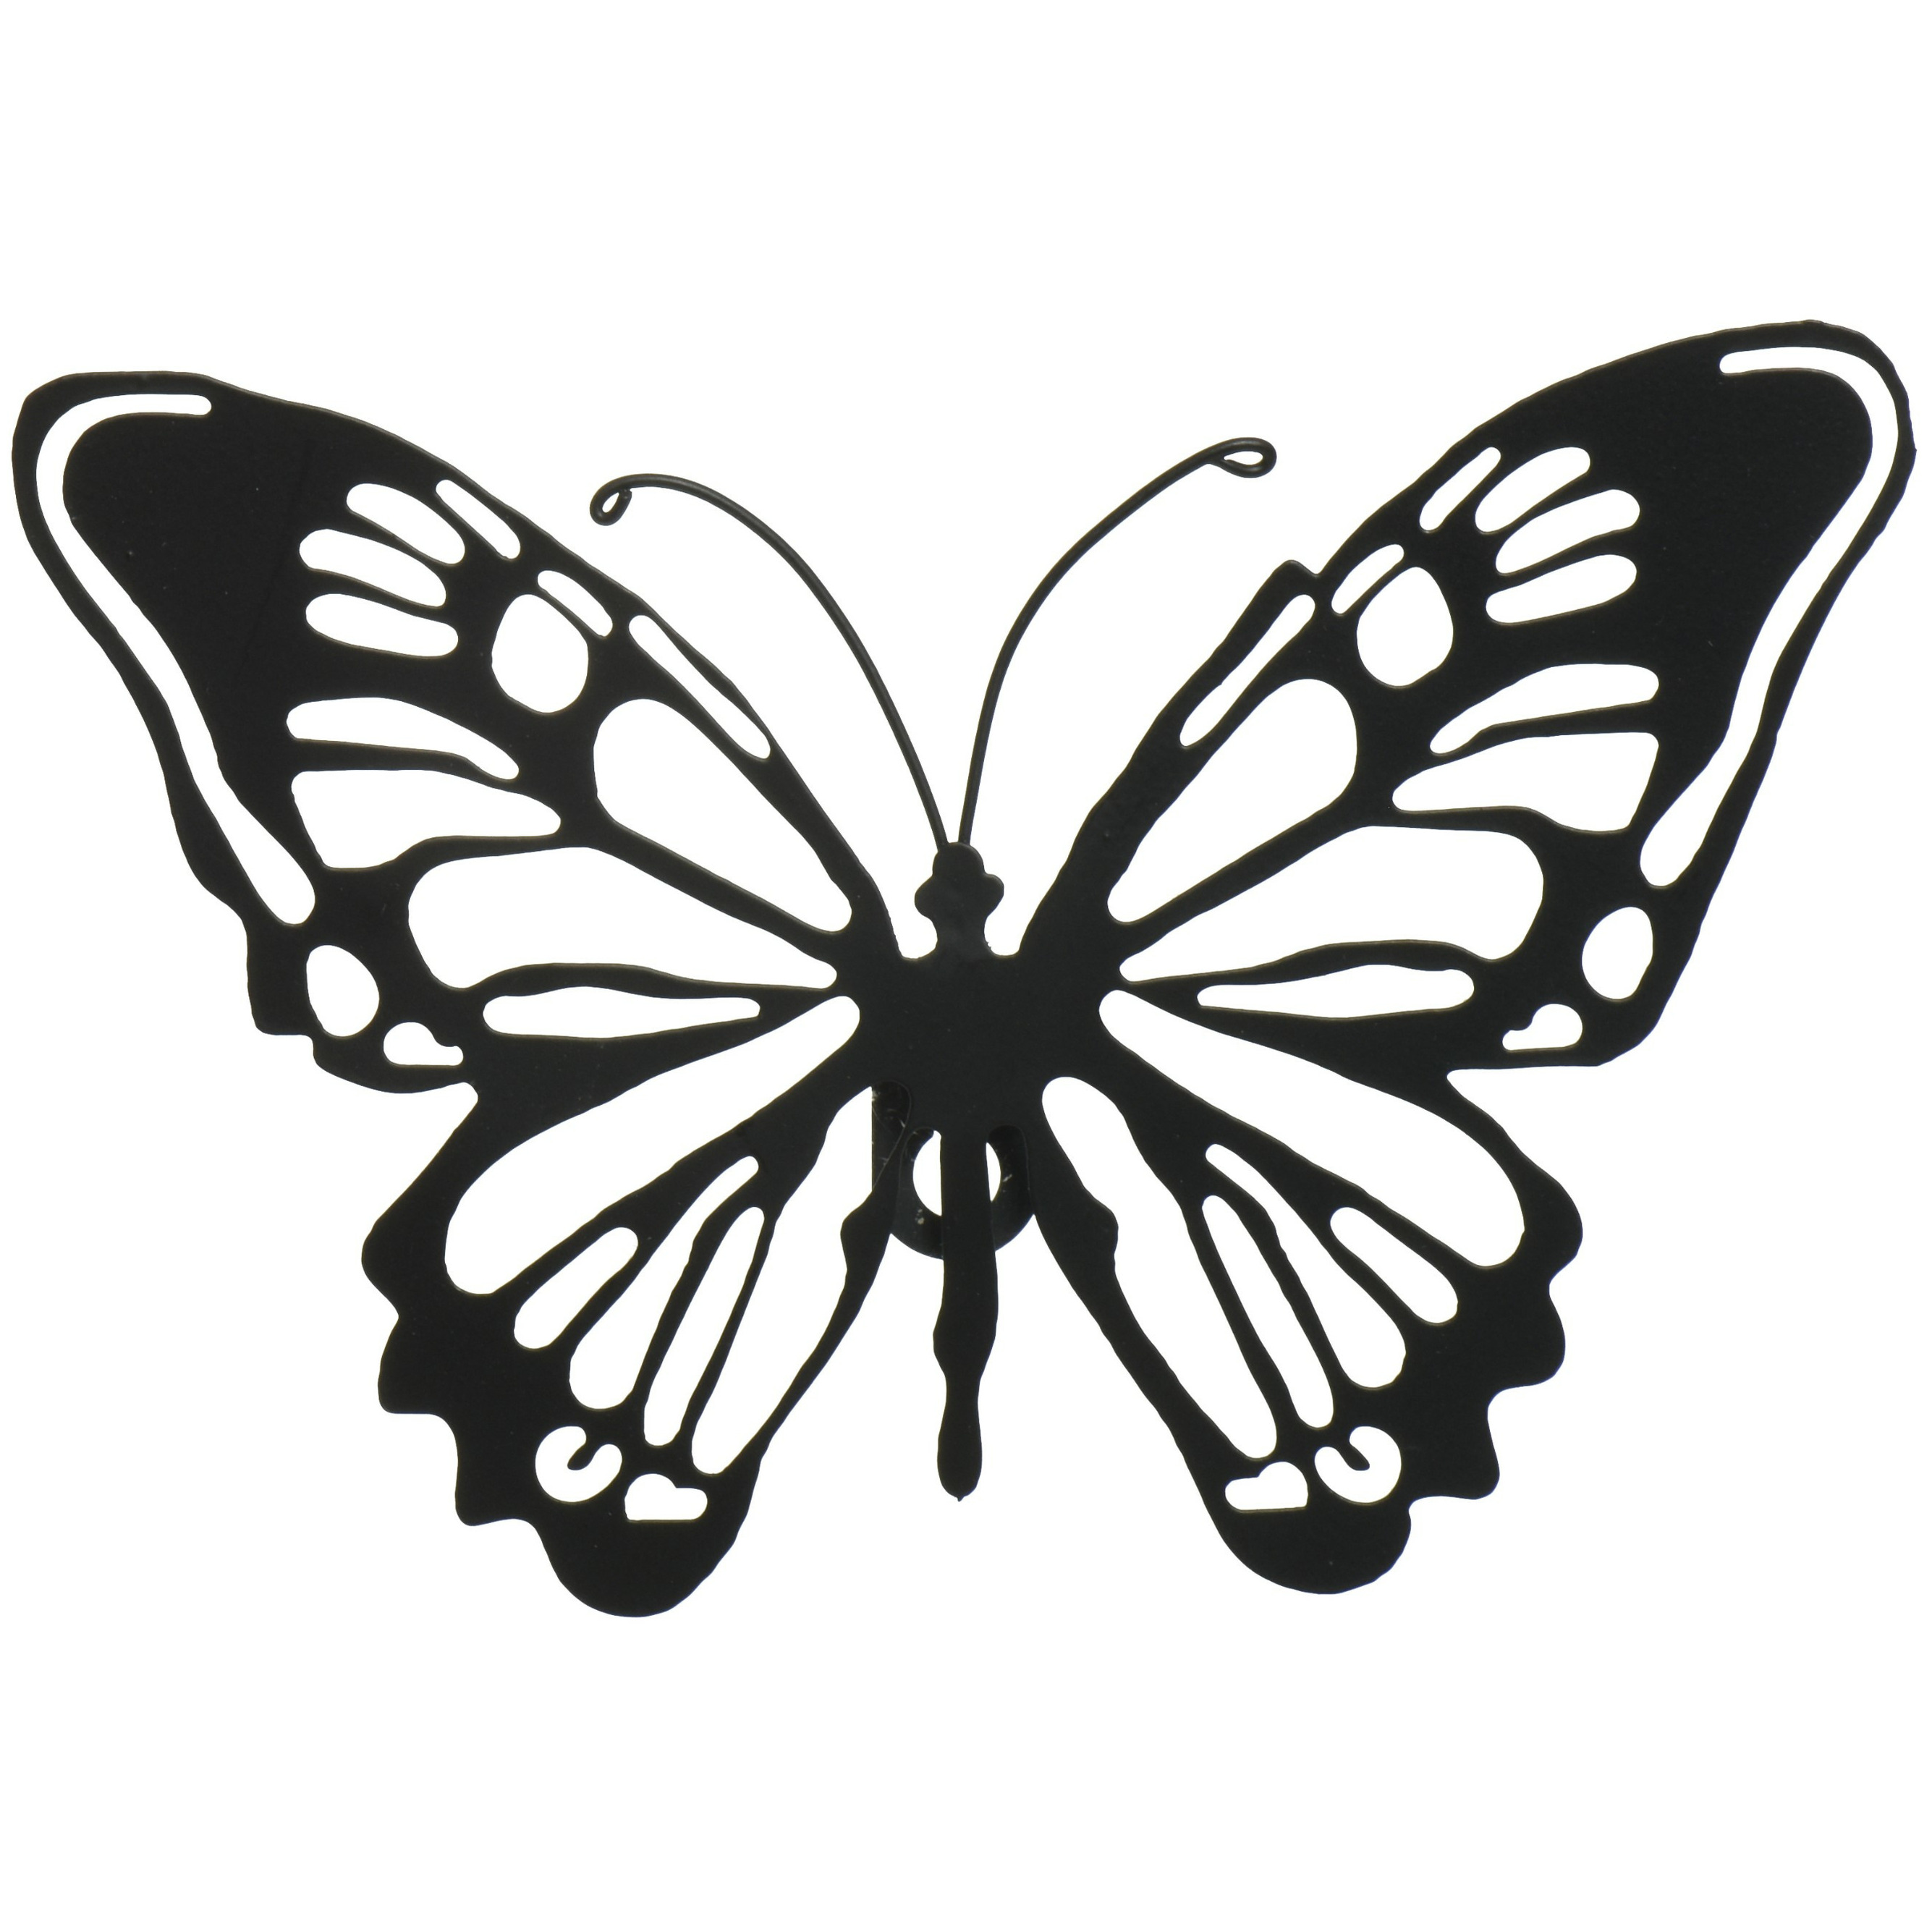 Tuin wanddecoratie vlinder metaal zwart 18 x 12 cm